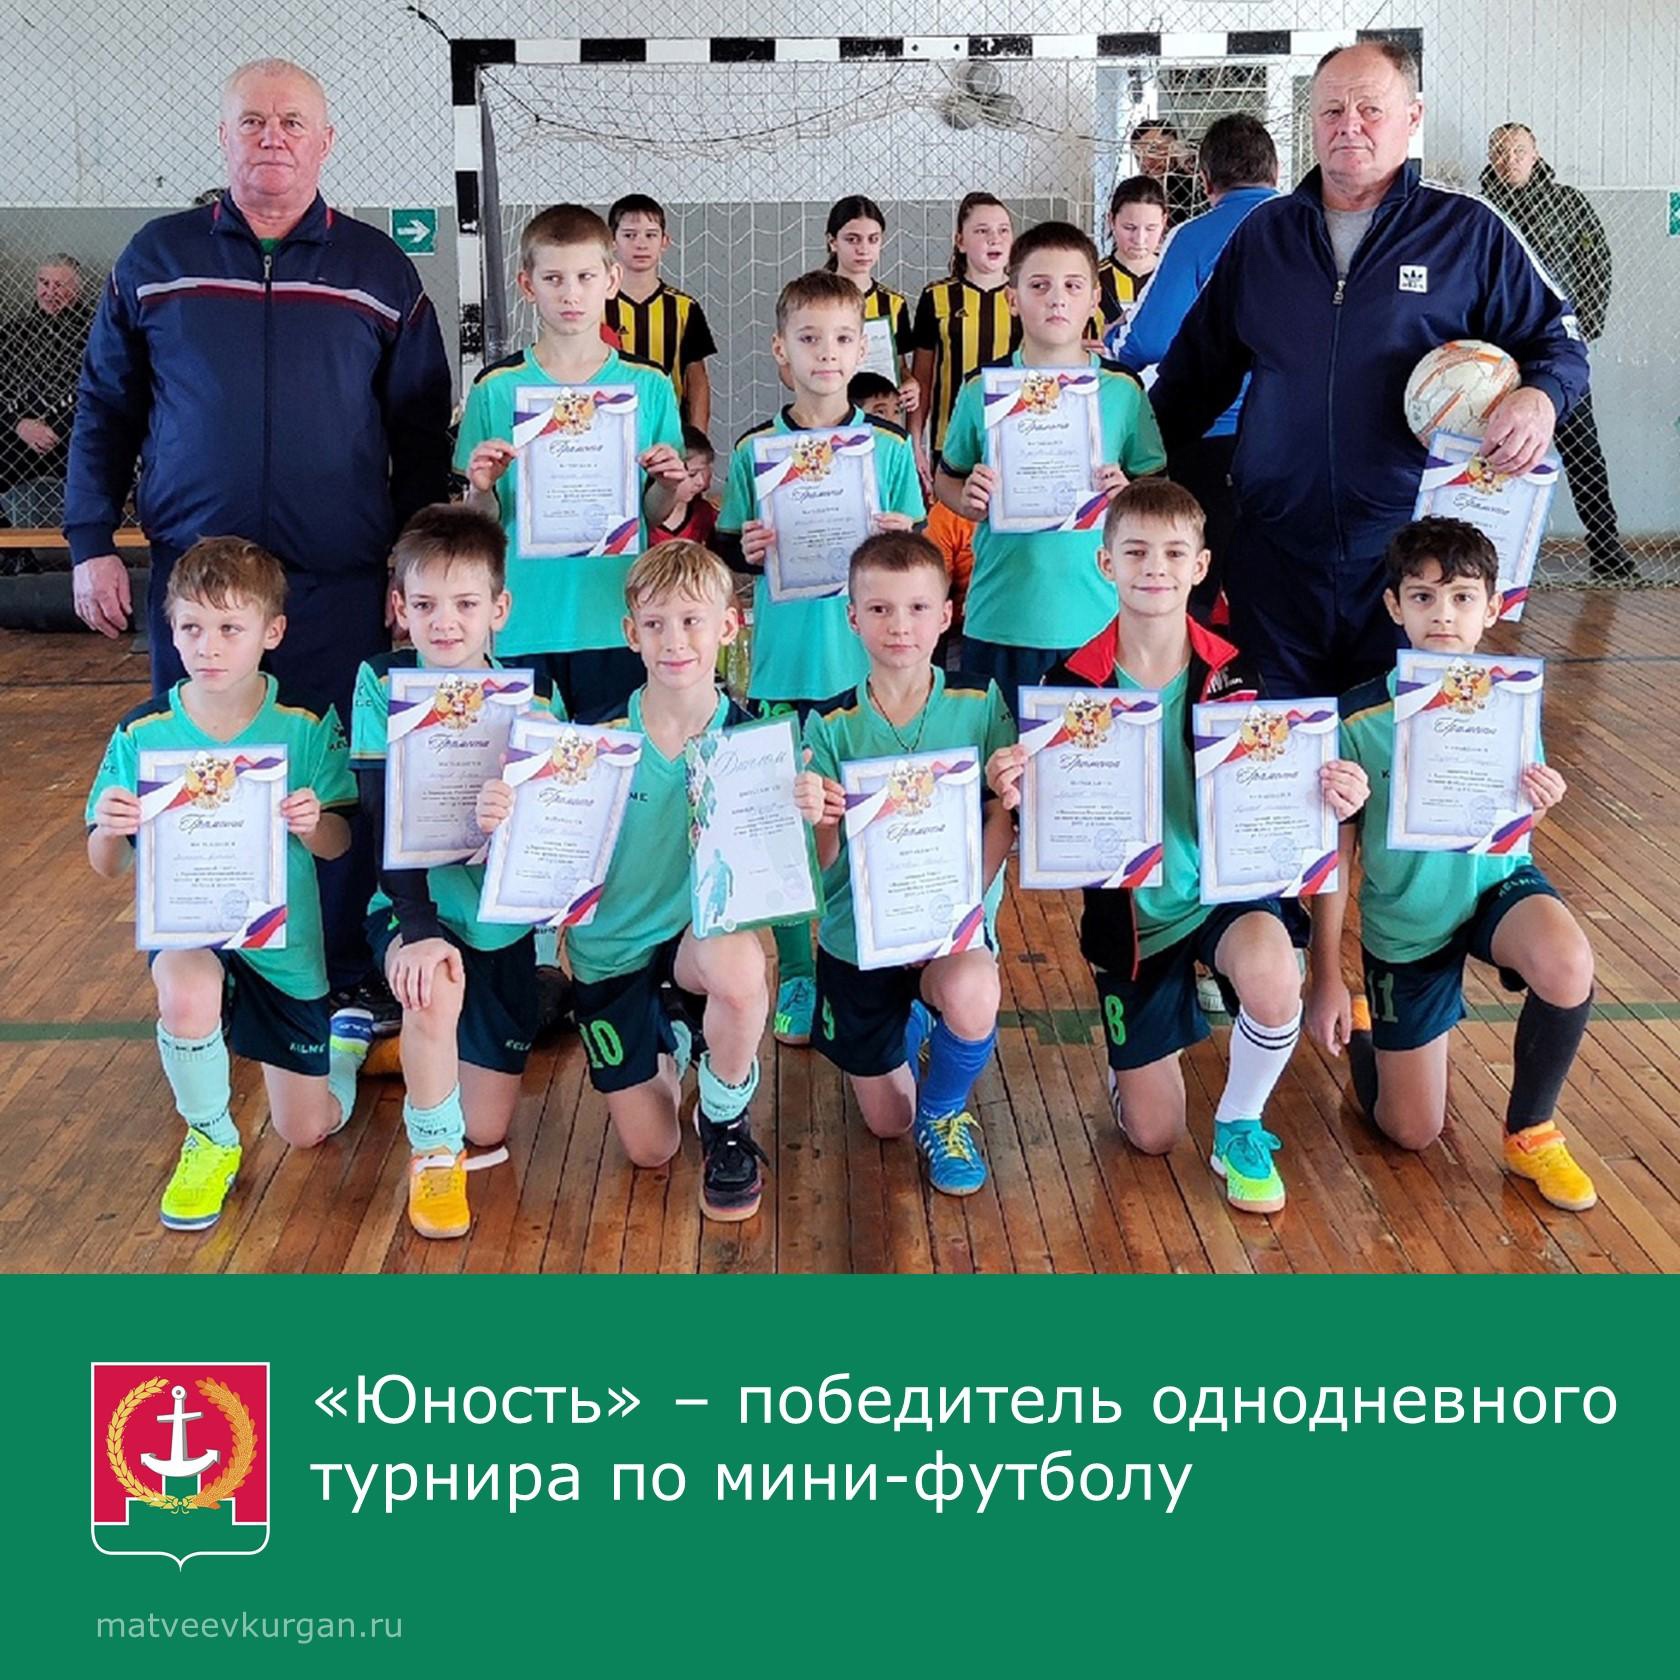 Турнир по мини-футболу в Матвеево-Курганском районе